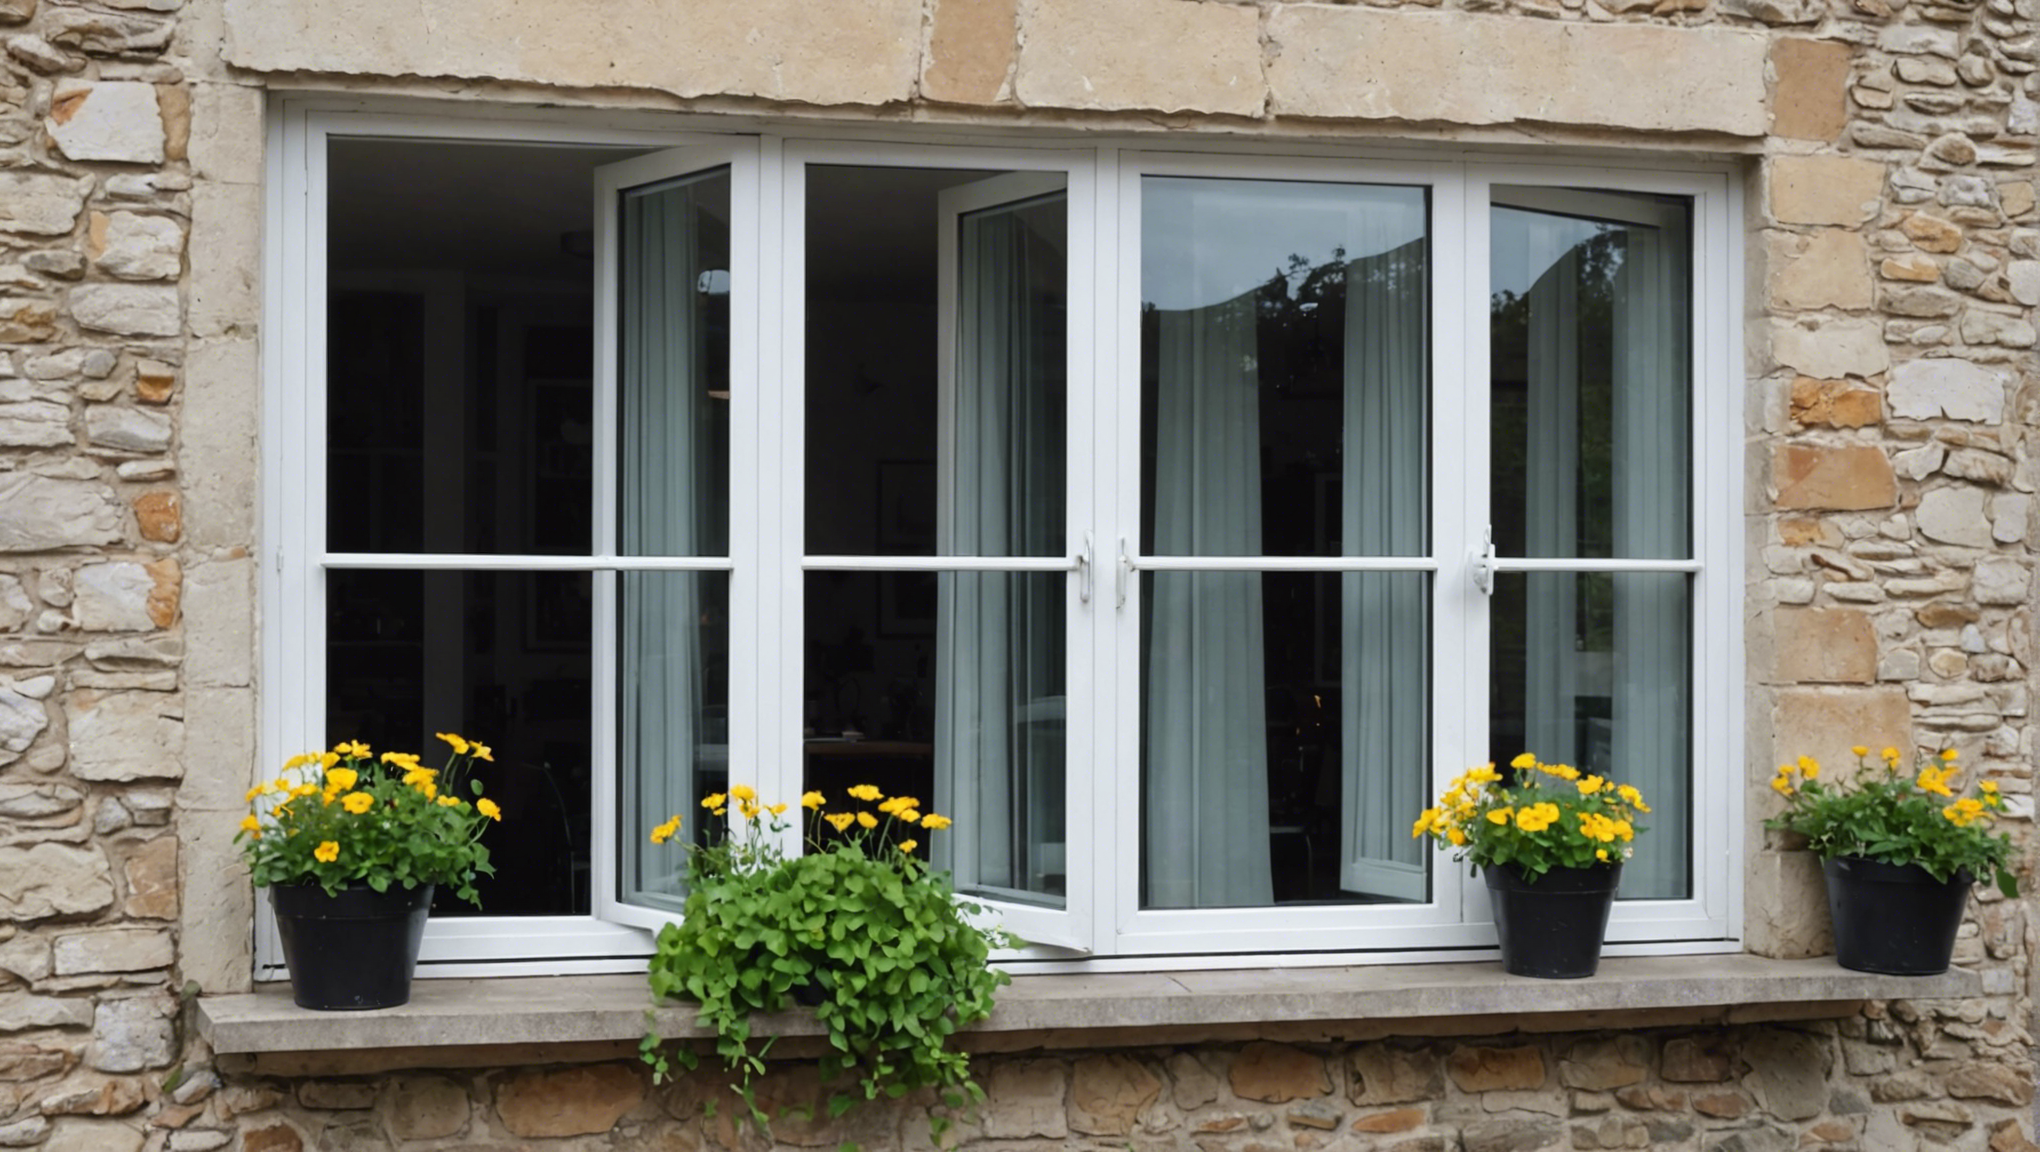 découvrez les avantages des fenêtres oscillo-battantes pour votre maison et améliorez votre confort quotidien. optez pour la praticité et l'esthétique avec ces fenêtres innovantes.